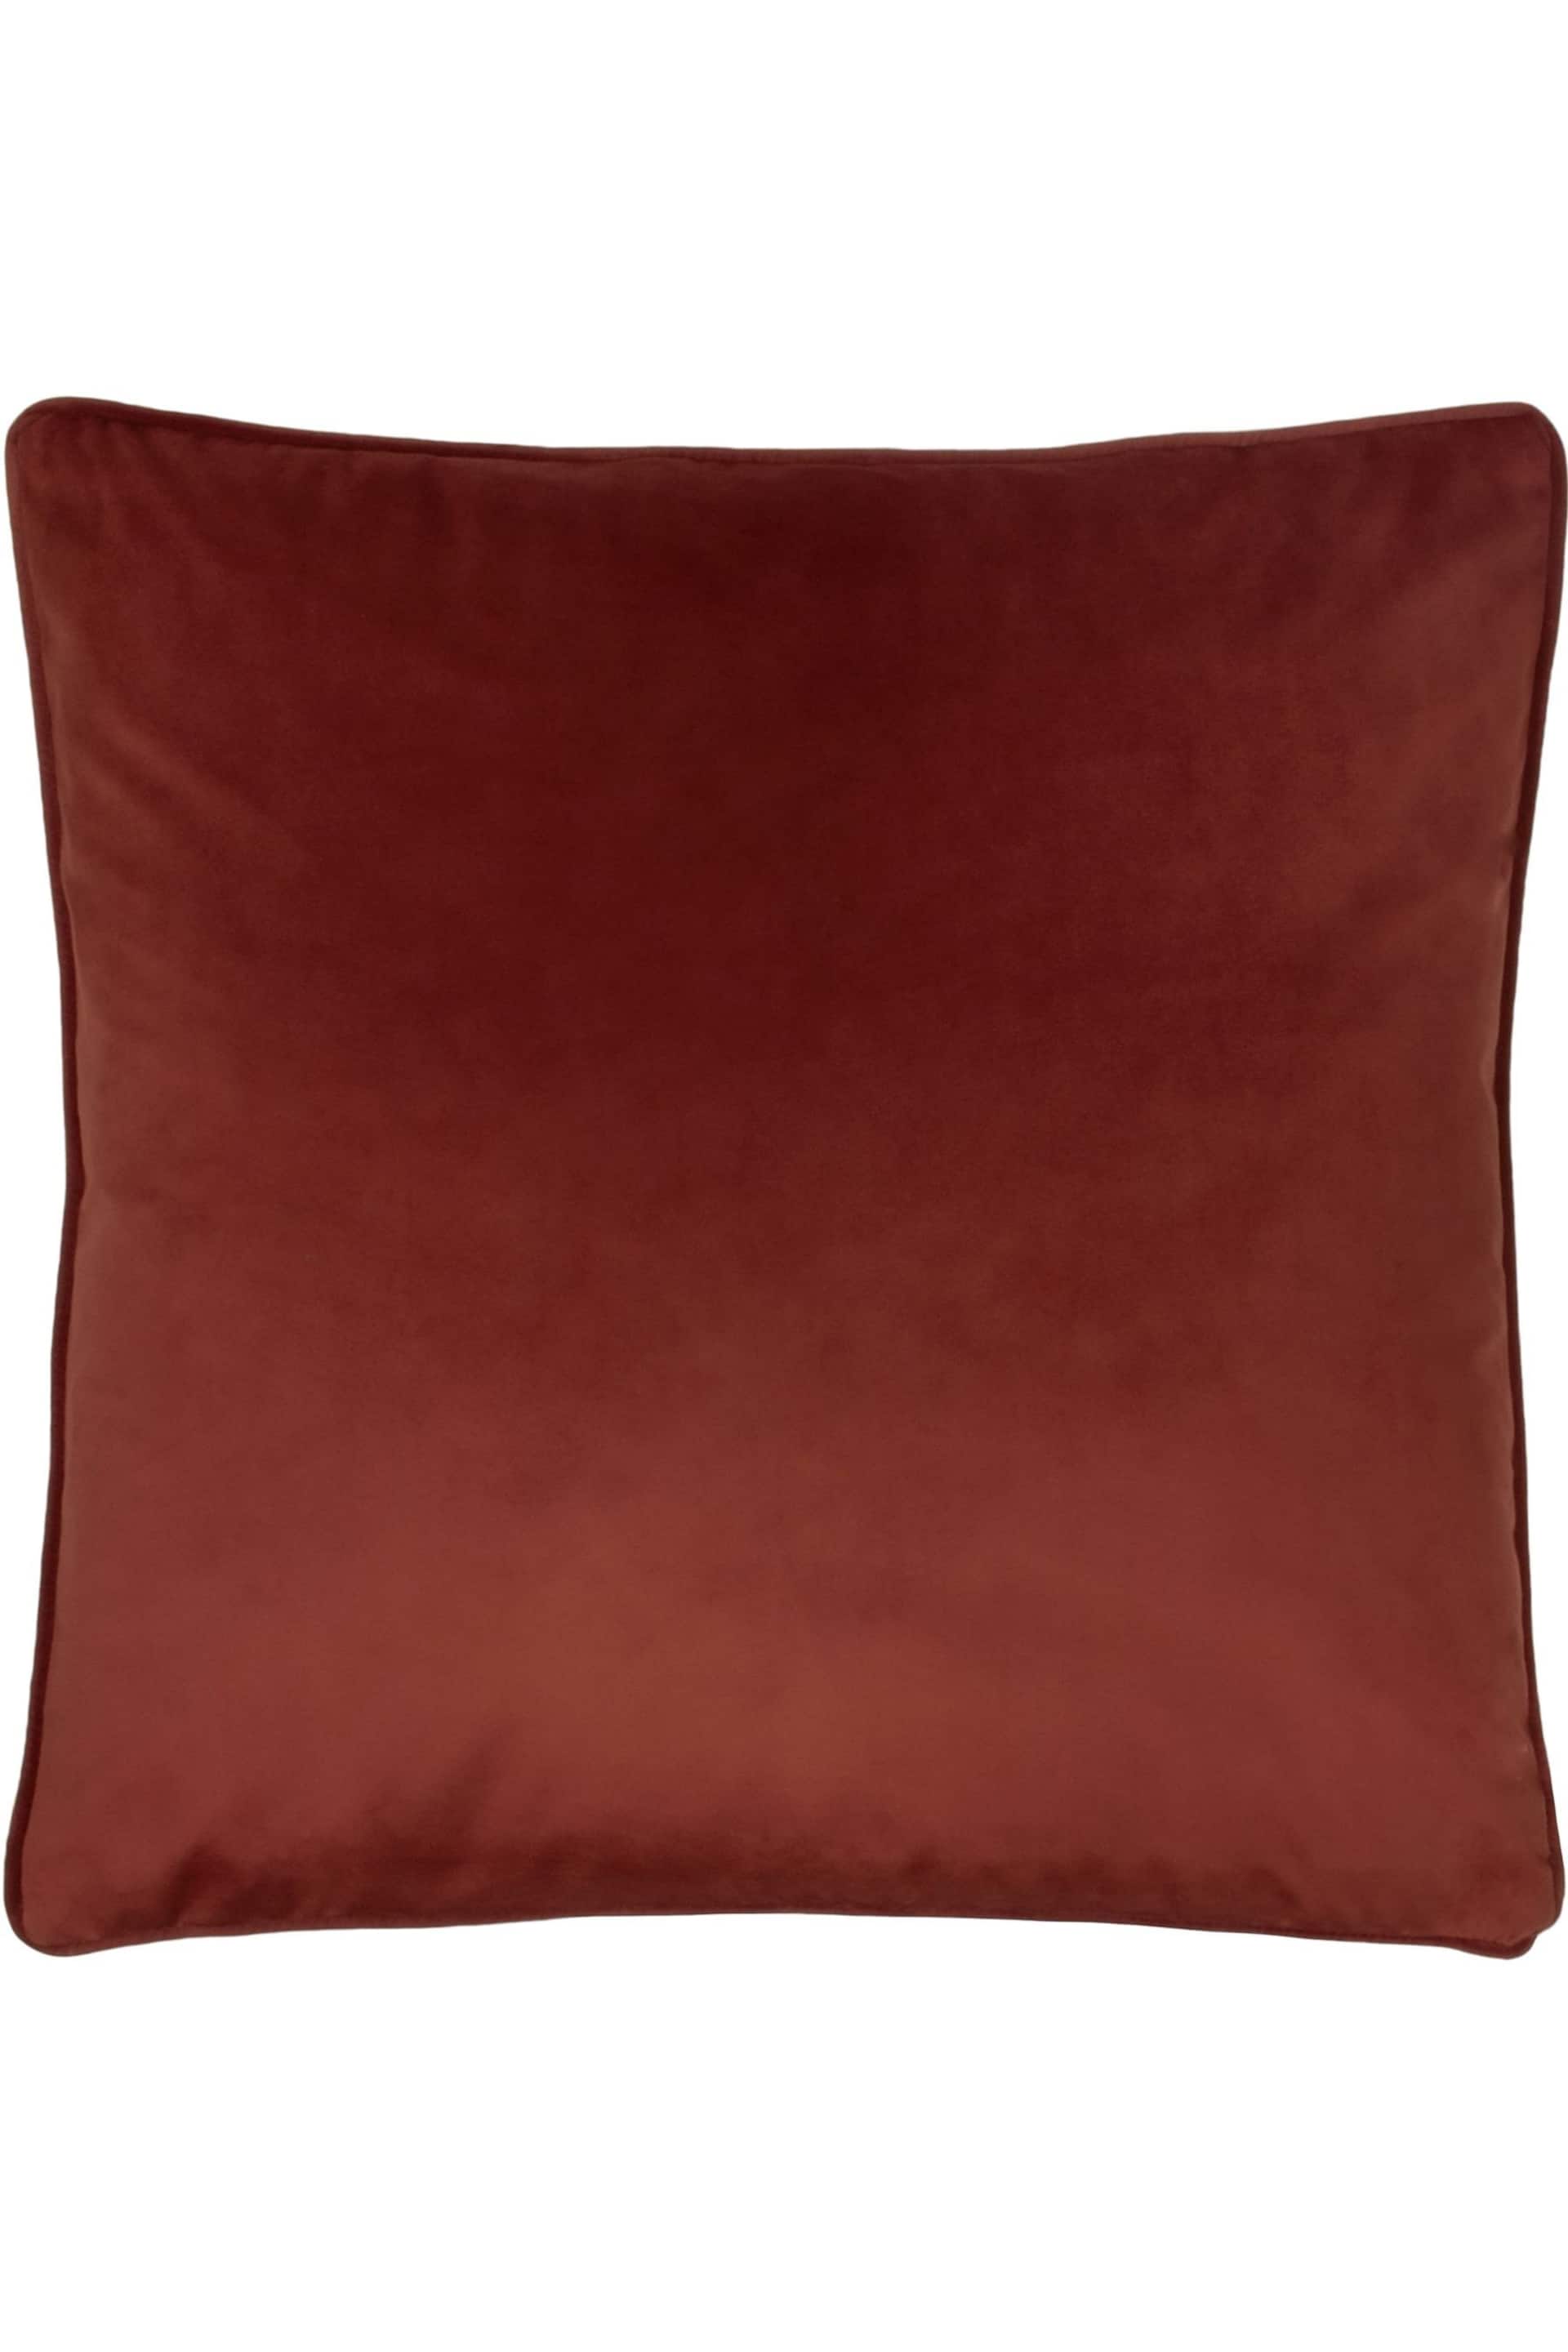 Evans Lichfield Sunset Orange Opulence Velvet Polyester Filled Cushion - Image 1 of 2